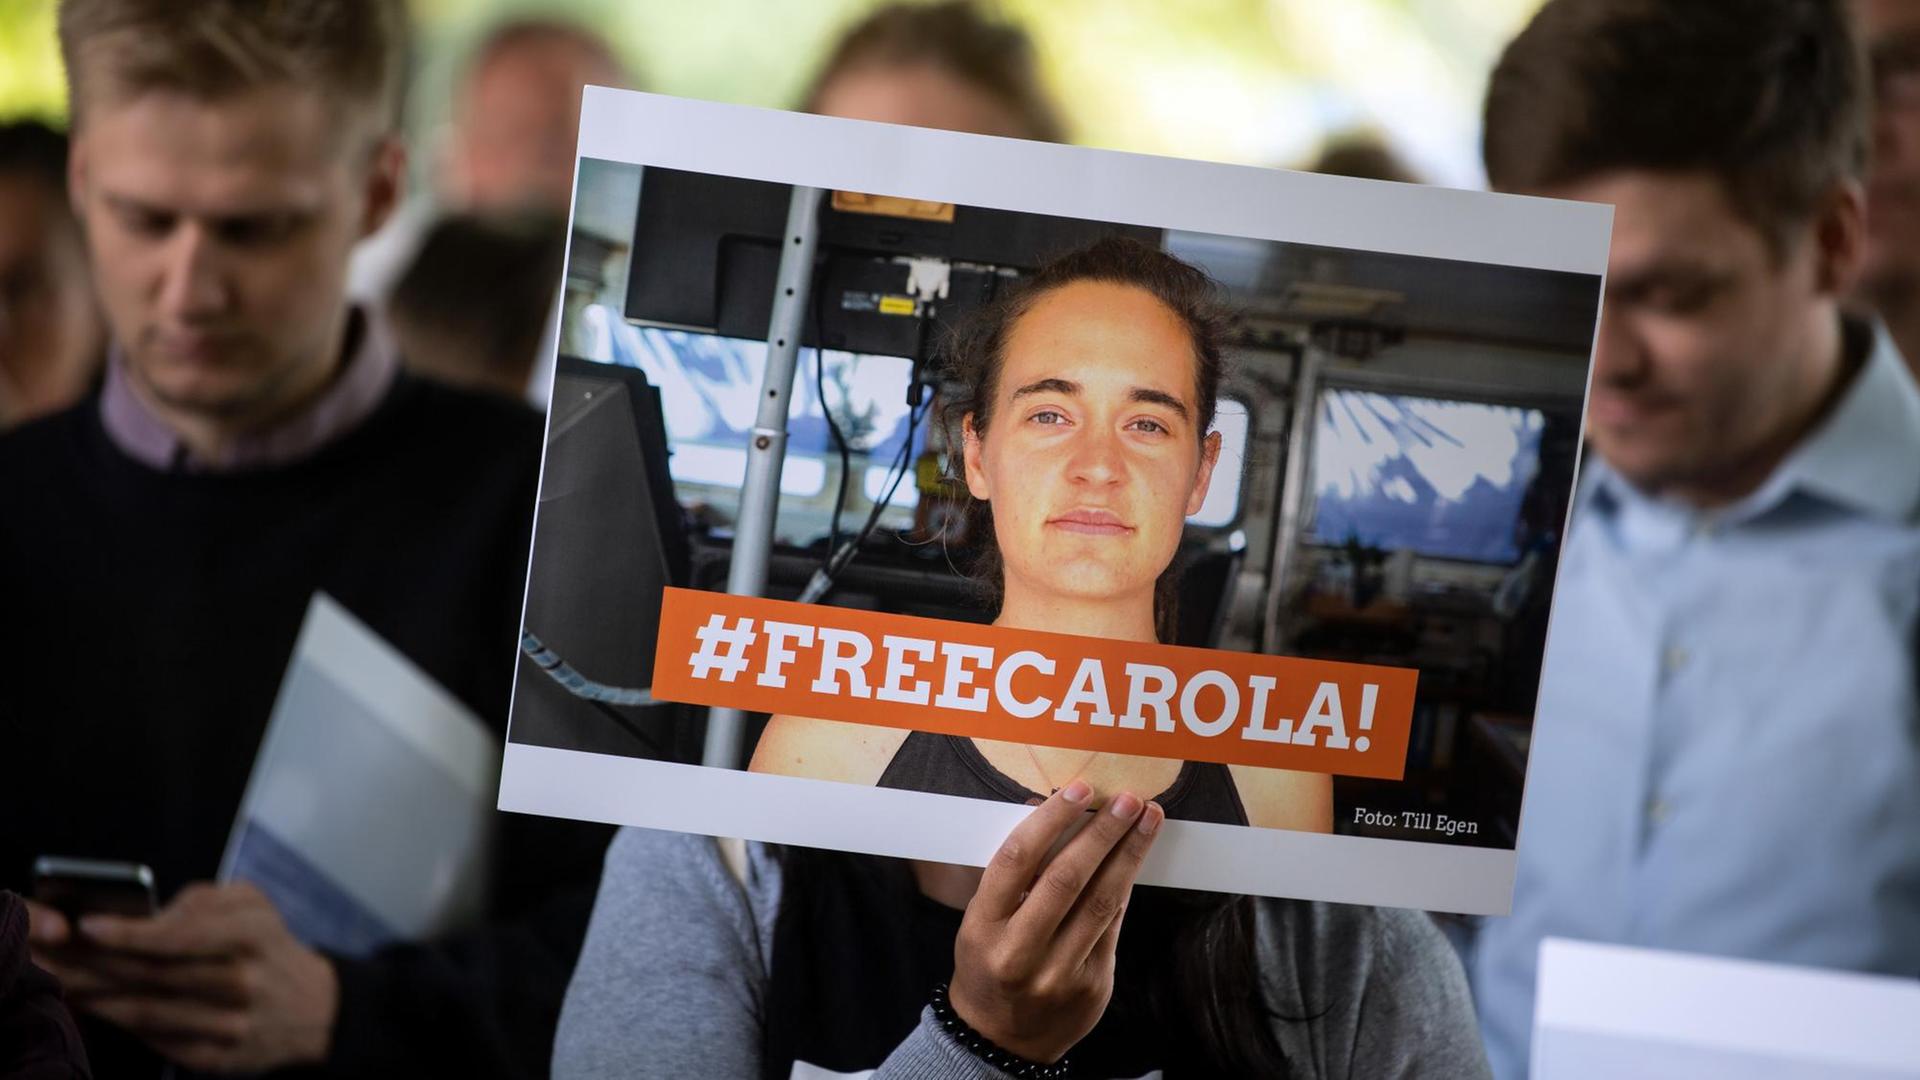 Eine Demonstrantin hält ein Bild von der Sea-Watch-Kapitänin Carola Rackete mit der Aufschrift "#FREECAROLA!" in der Hand.